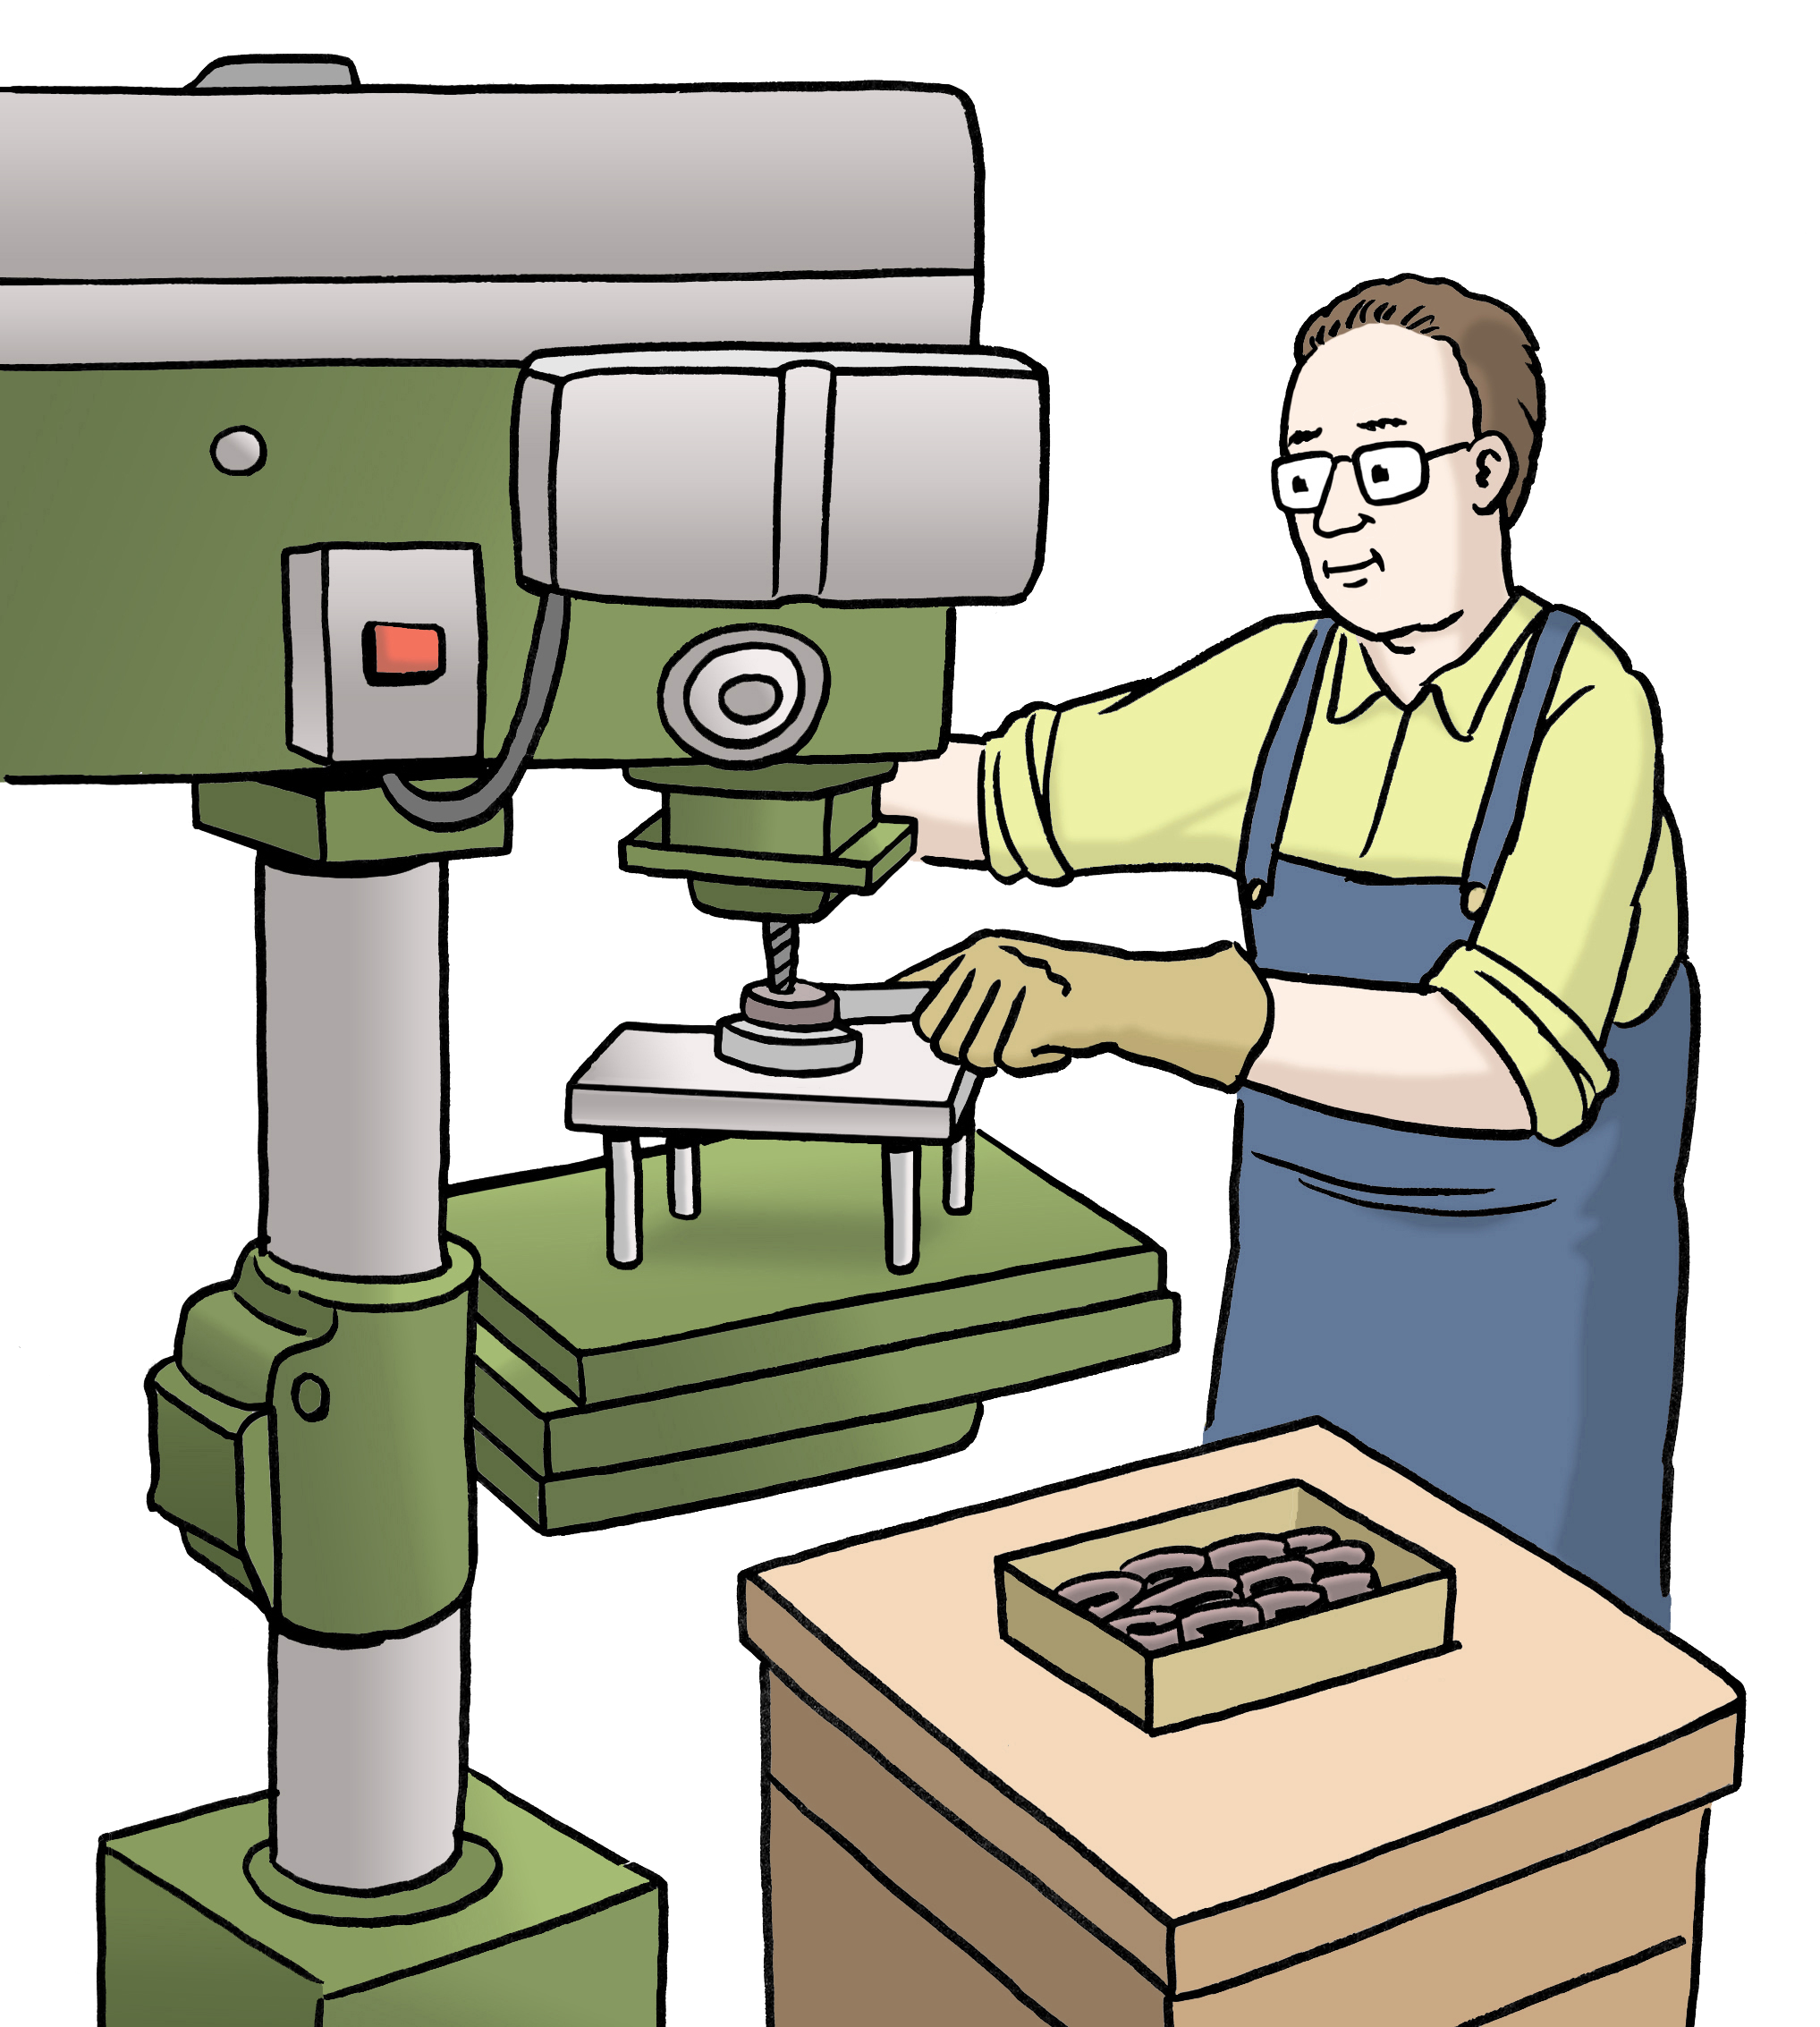 Leichte Sprache Bild: Ein Mann arbeitet an einer Maschine